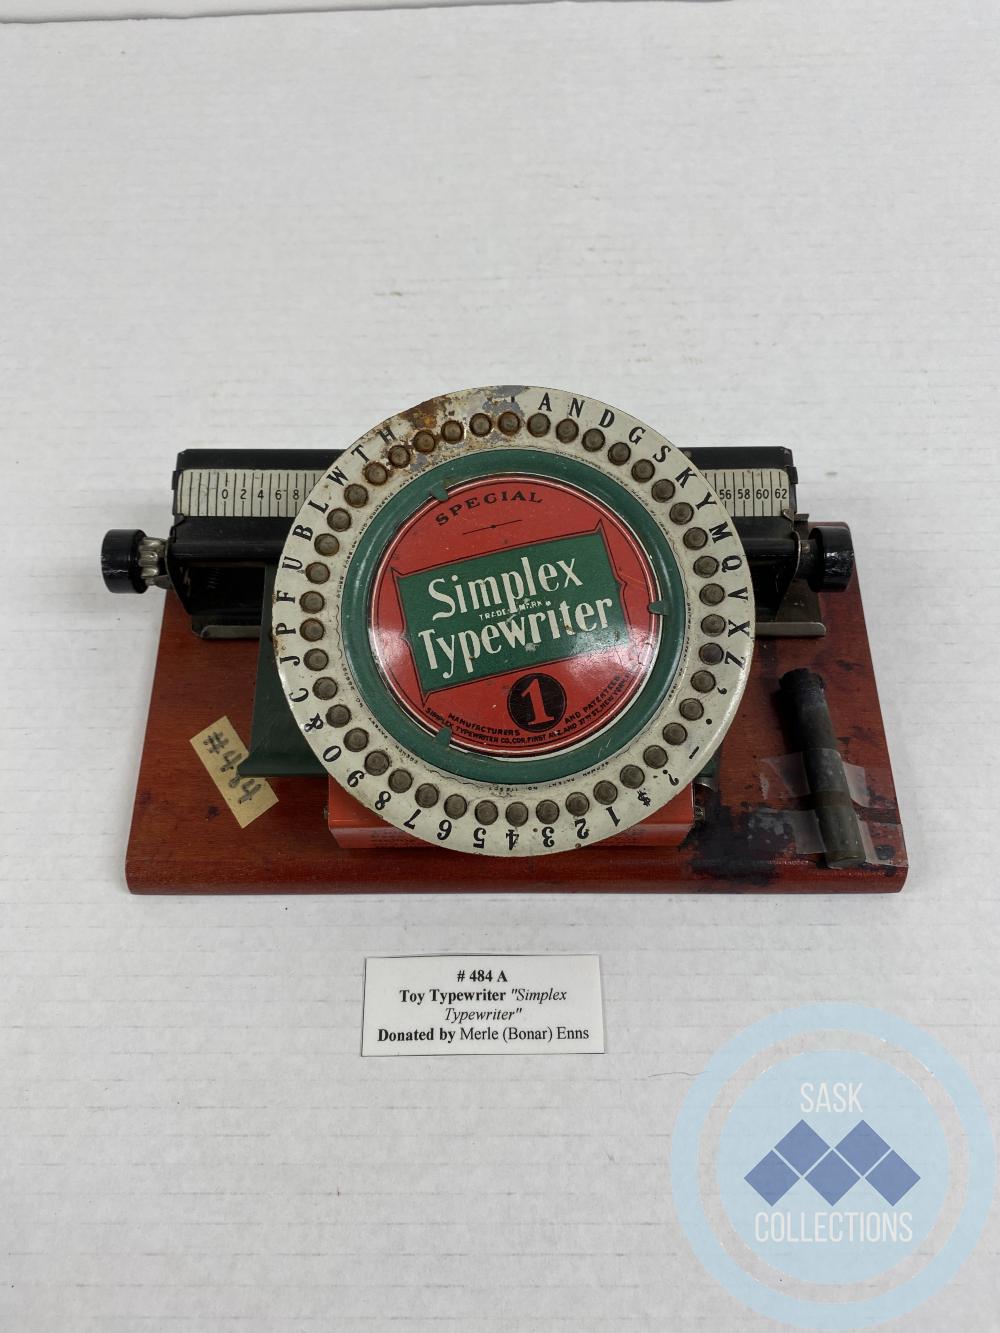 Toy Typewriter "Simplex Typerwriter"